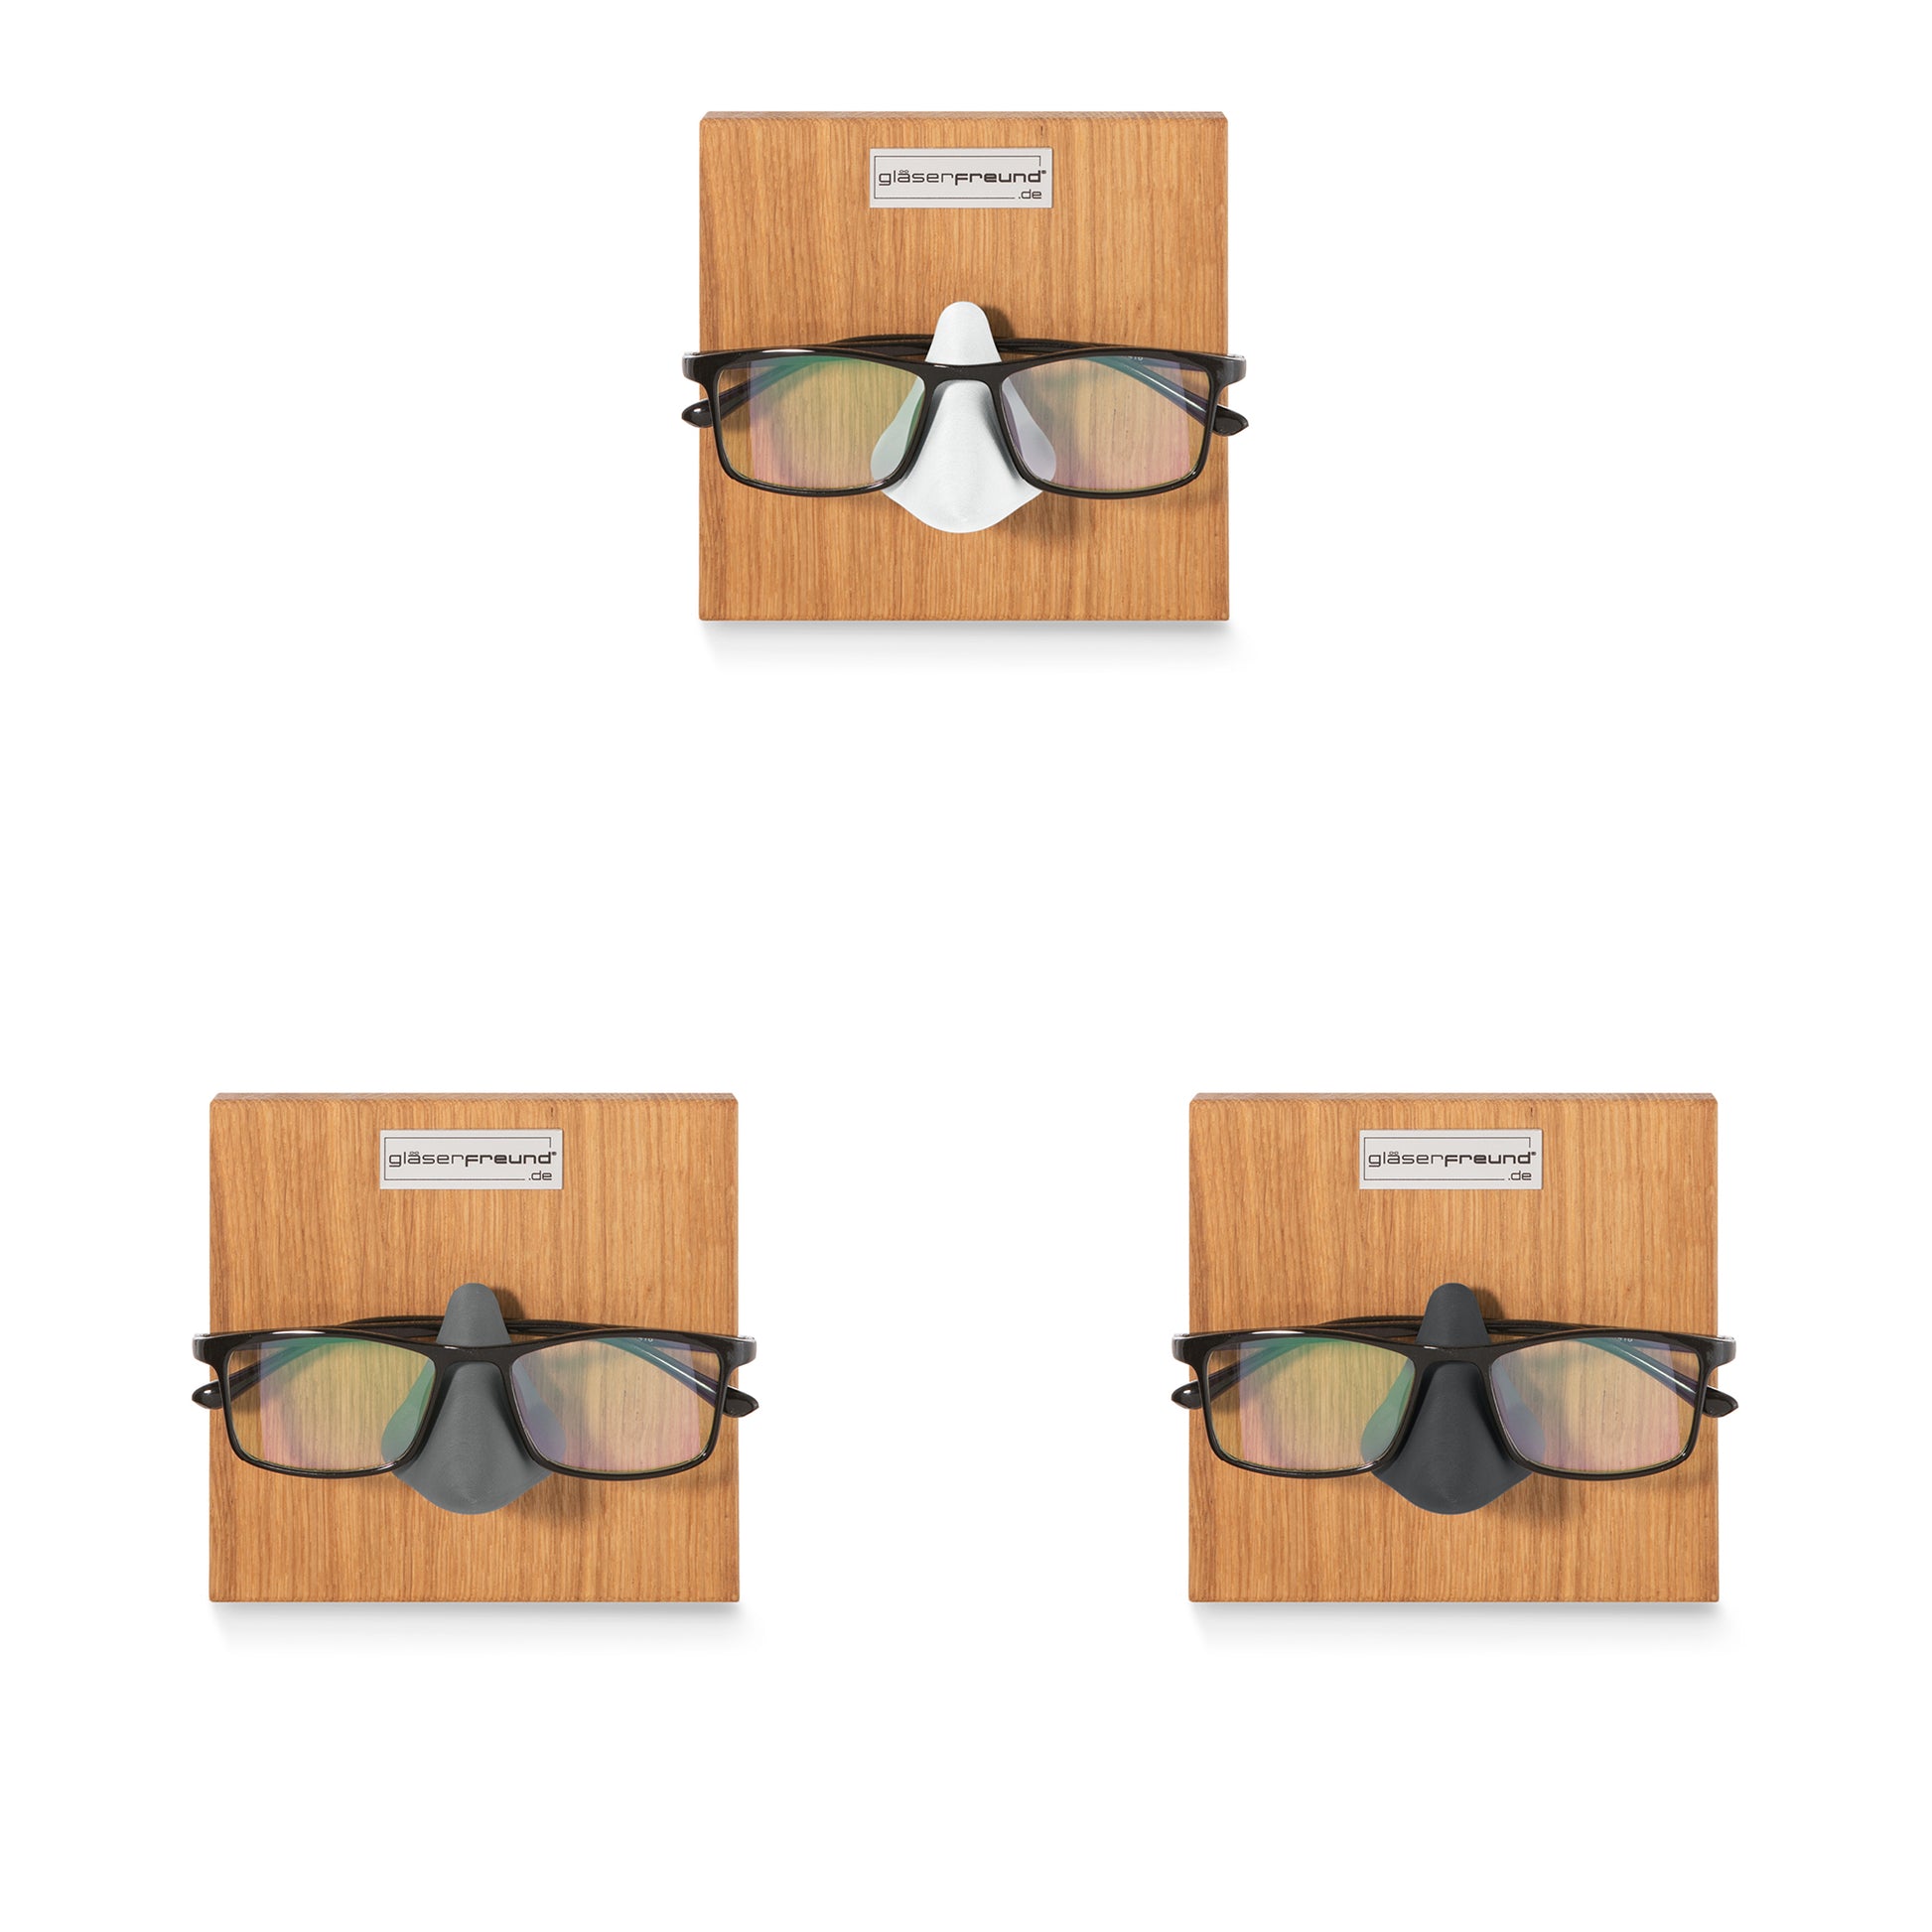 Mary Brillenorganizer aus Holz für 9 Brillen – gläserfreund®